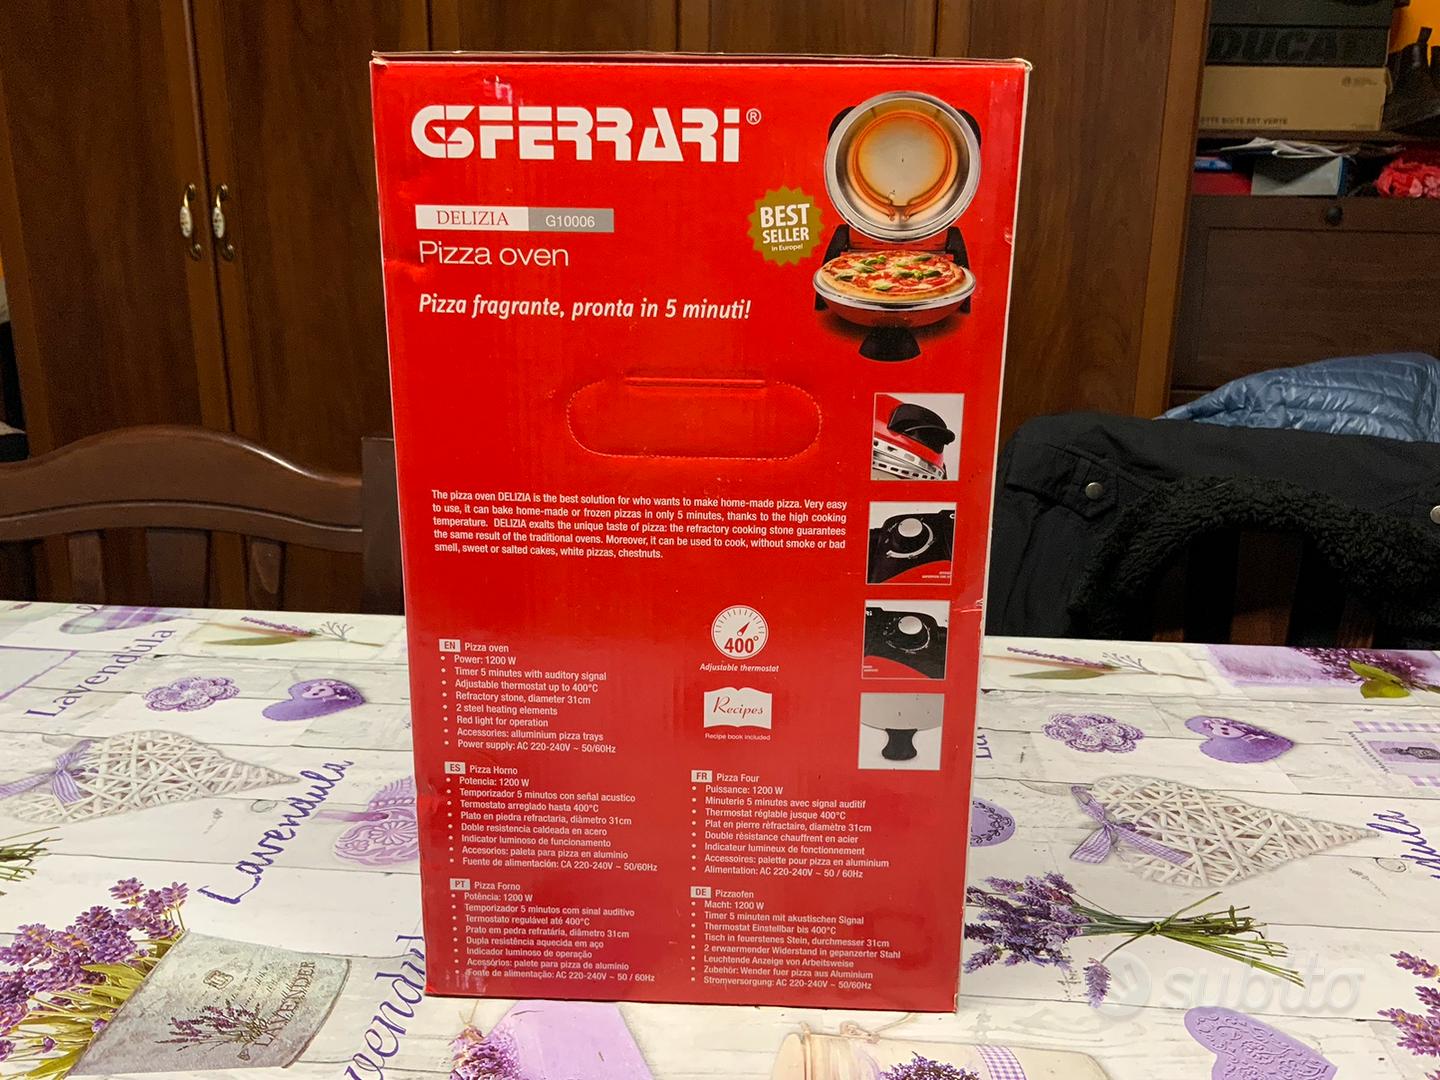 Forno pizza G.Ferrari modello Delizia G10006 - Elettrodomestici In vendita  a Brescia